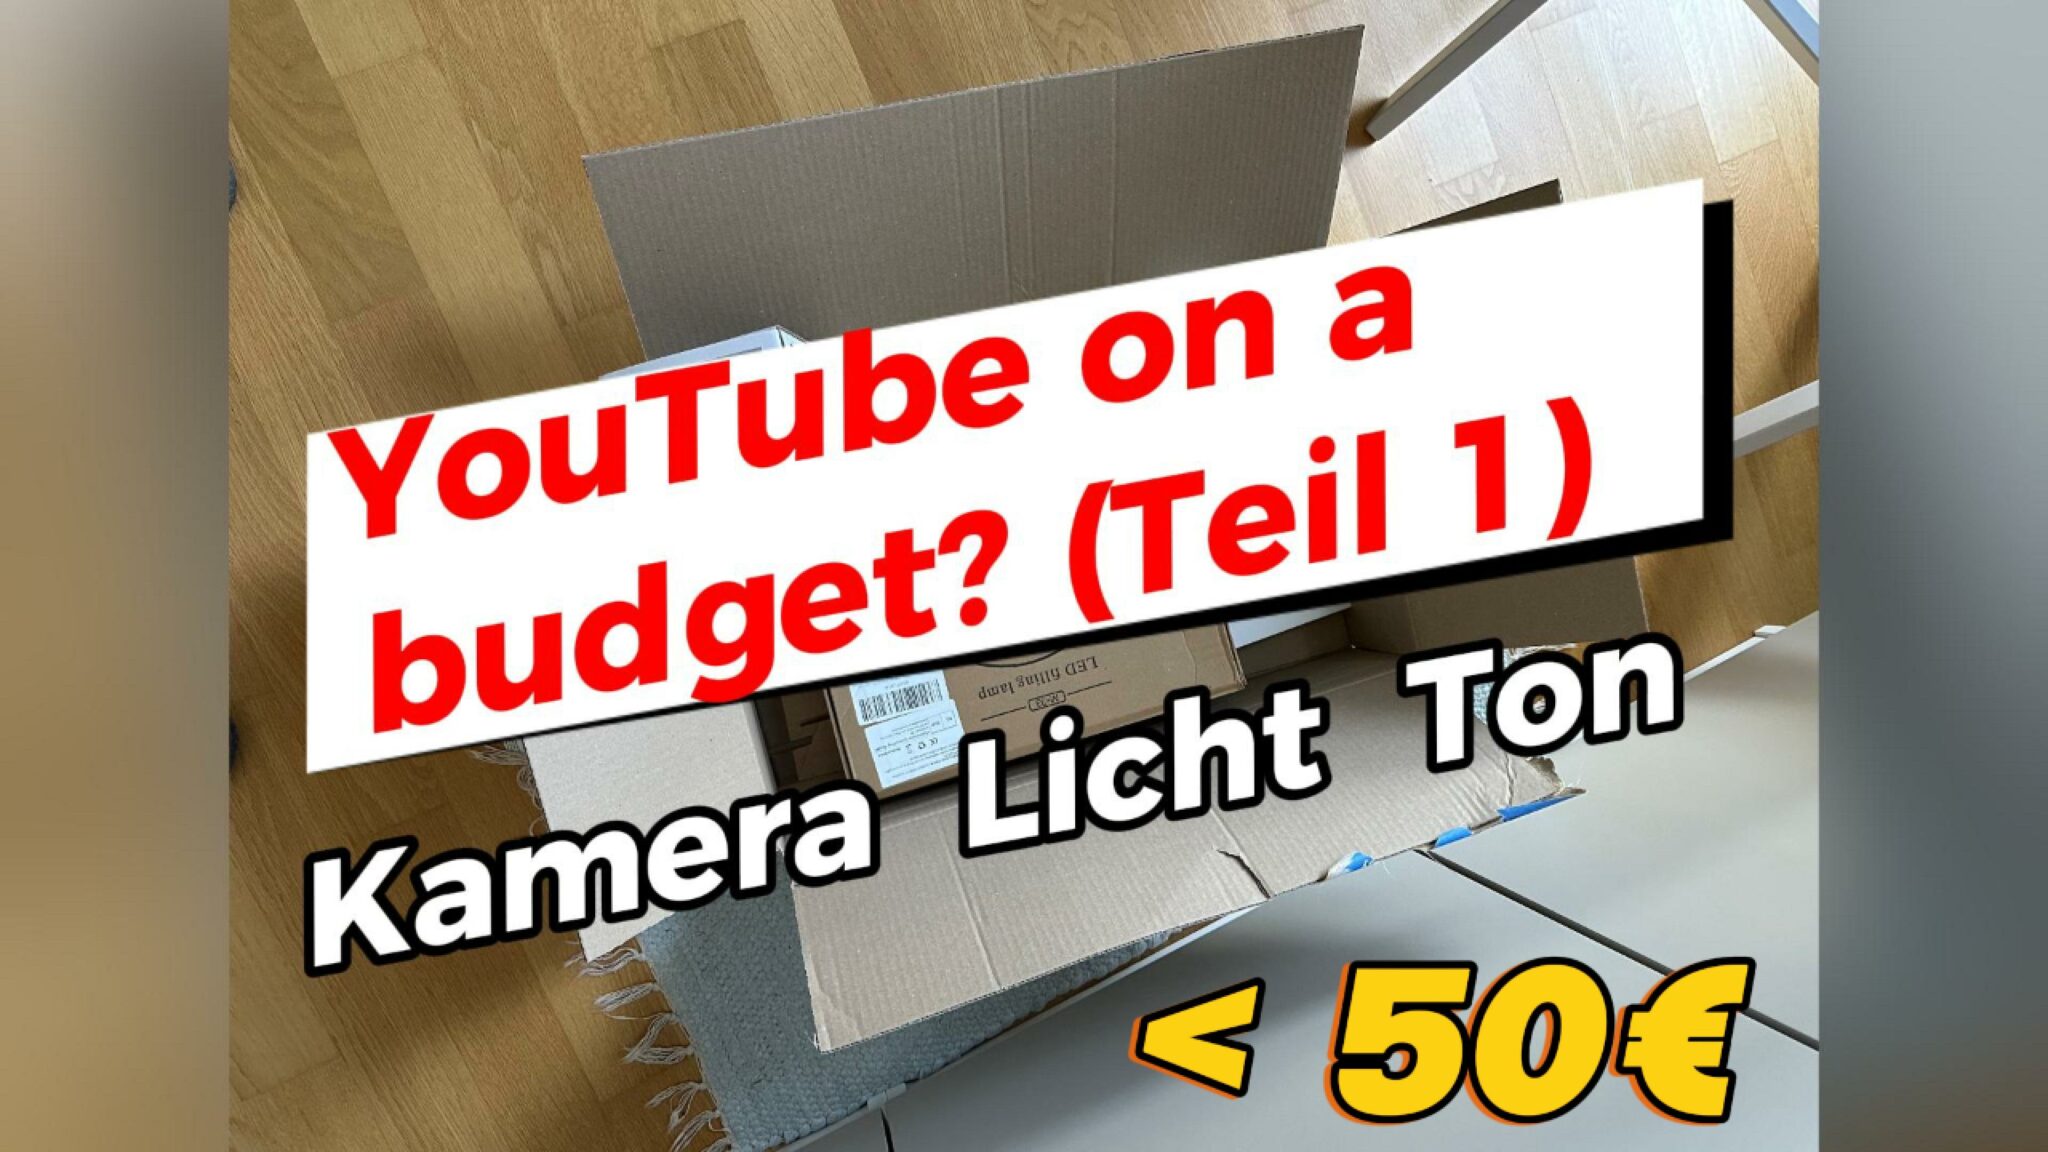 YouTube setup on a budget – Teil 1: Kamera, Licht, Ton für unter 50 €! Geht das?